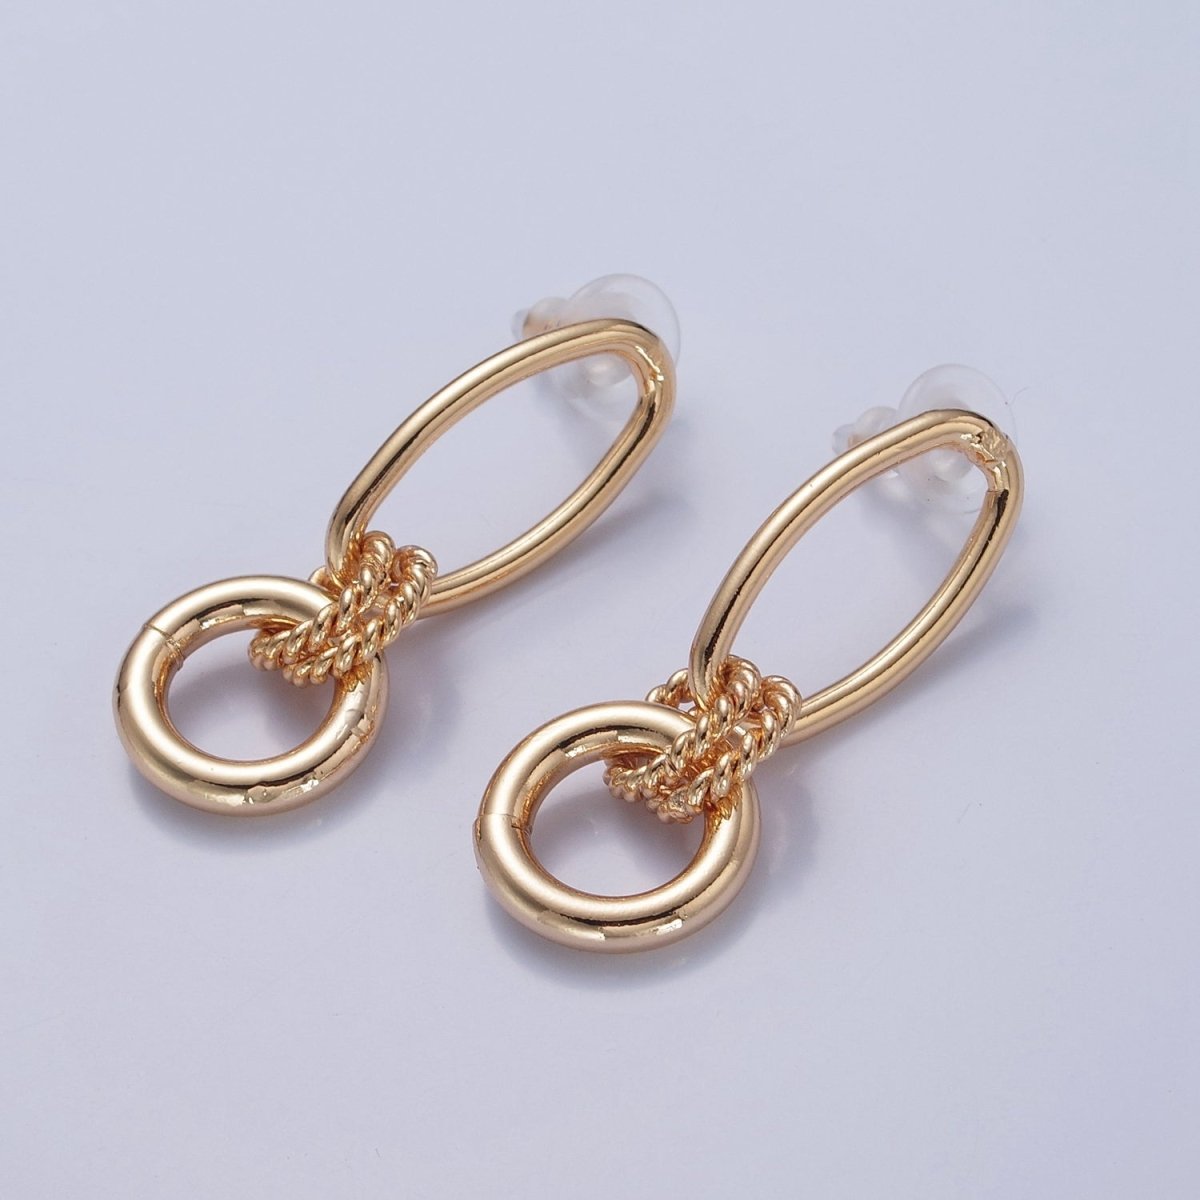 Post Earrings, Gold Hoop Earrings, Post with Hoop, Oval Stud Earring V-394 - DLUXCA